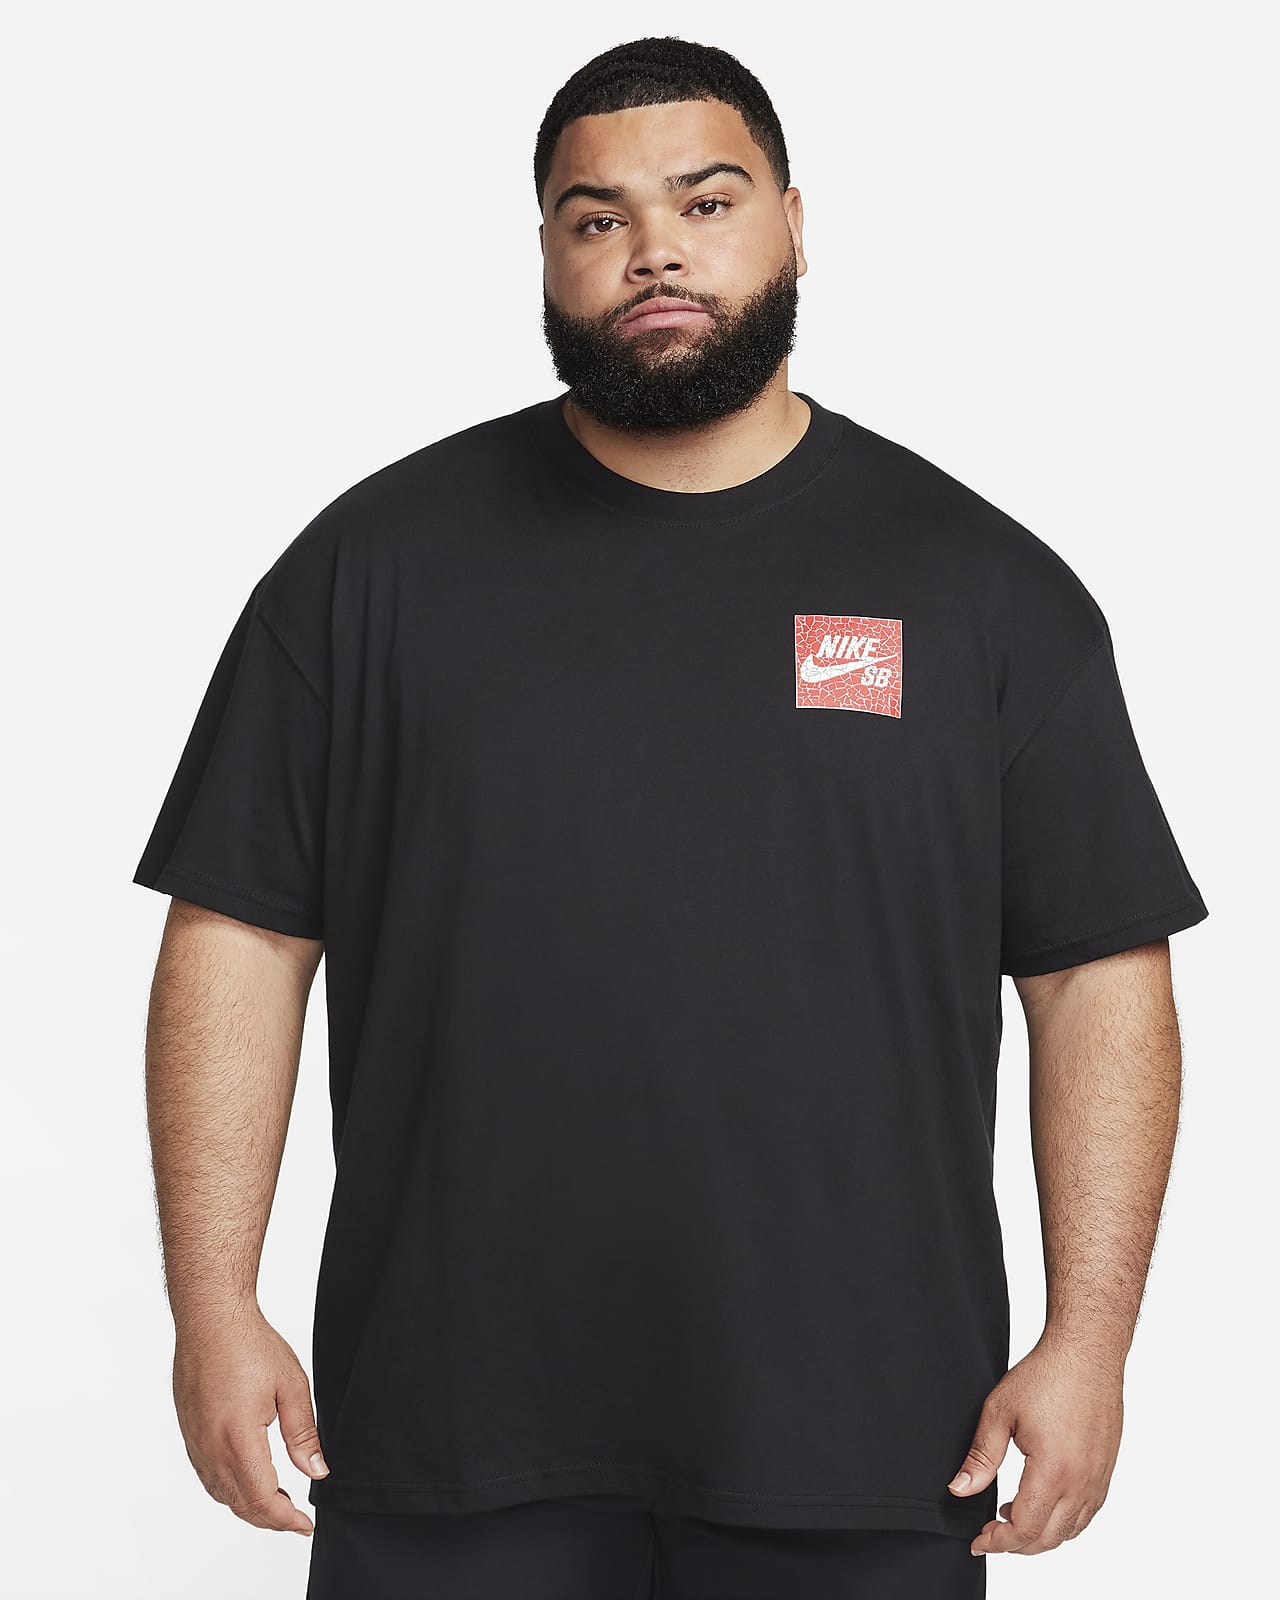 Nike SB Skate T-Shirt.